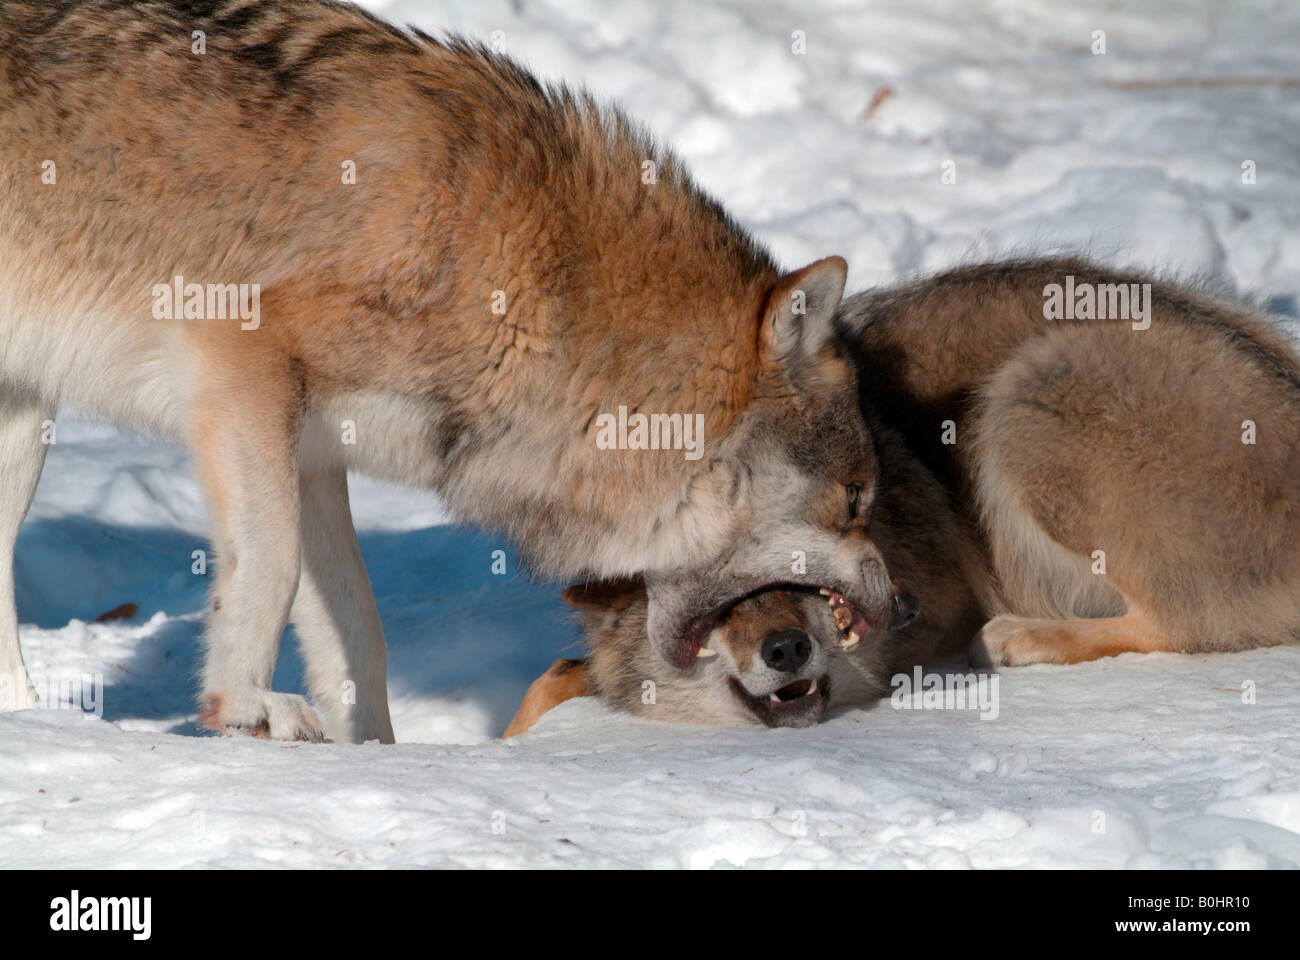 Grauer Wolf oder Timber Wolf (Canis Lupus) beißen in die Schnauze eines zweiten Wolfes, Nationalpark Bayerischer Wald, Bayern, Deutschland Stockfoto